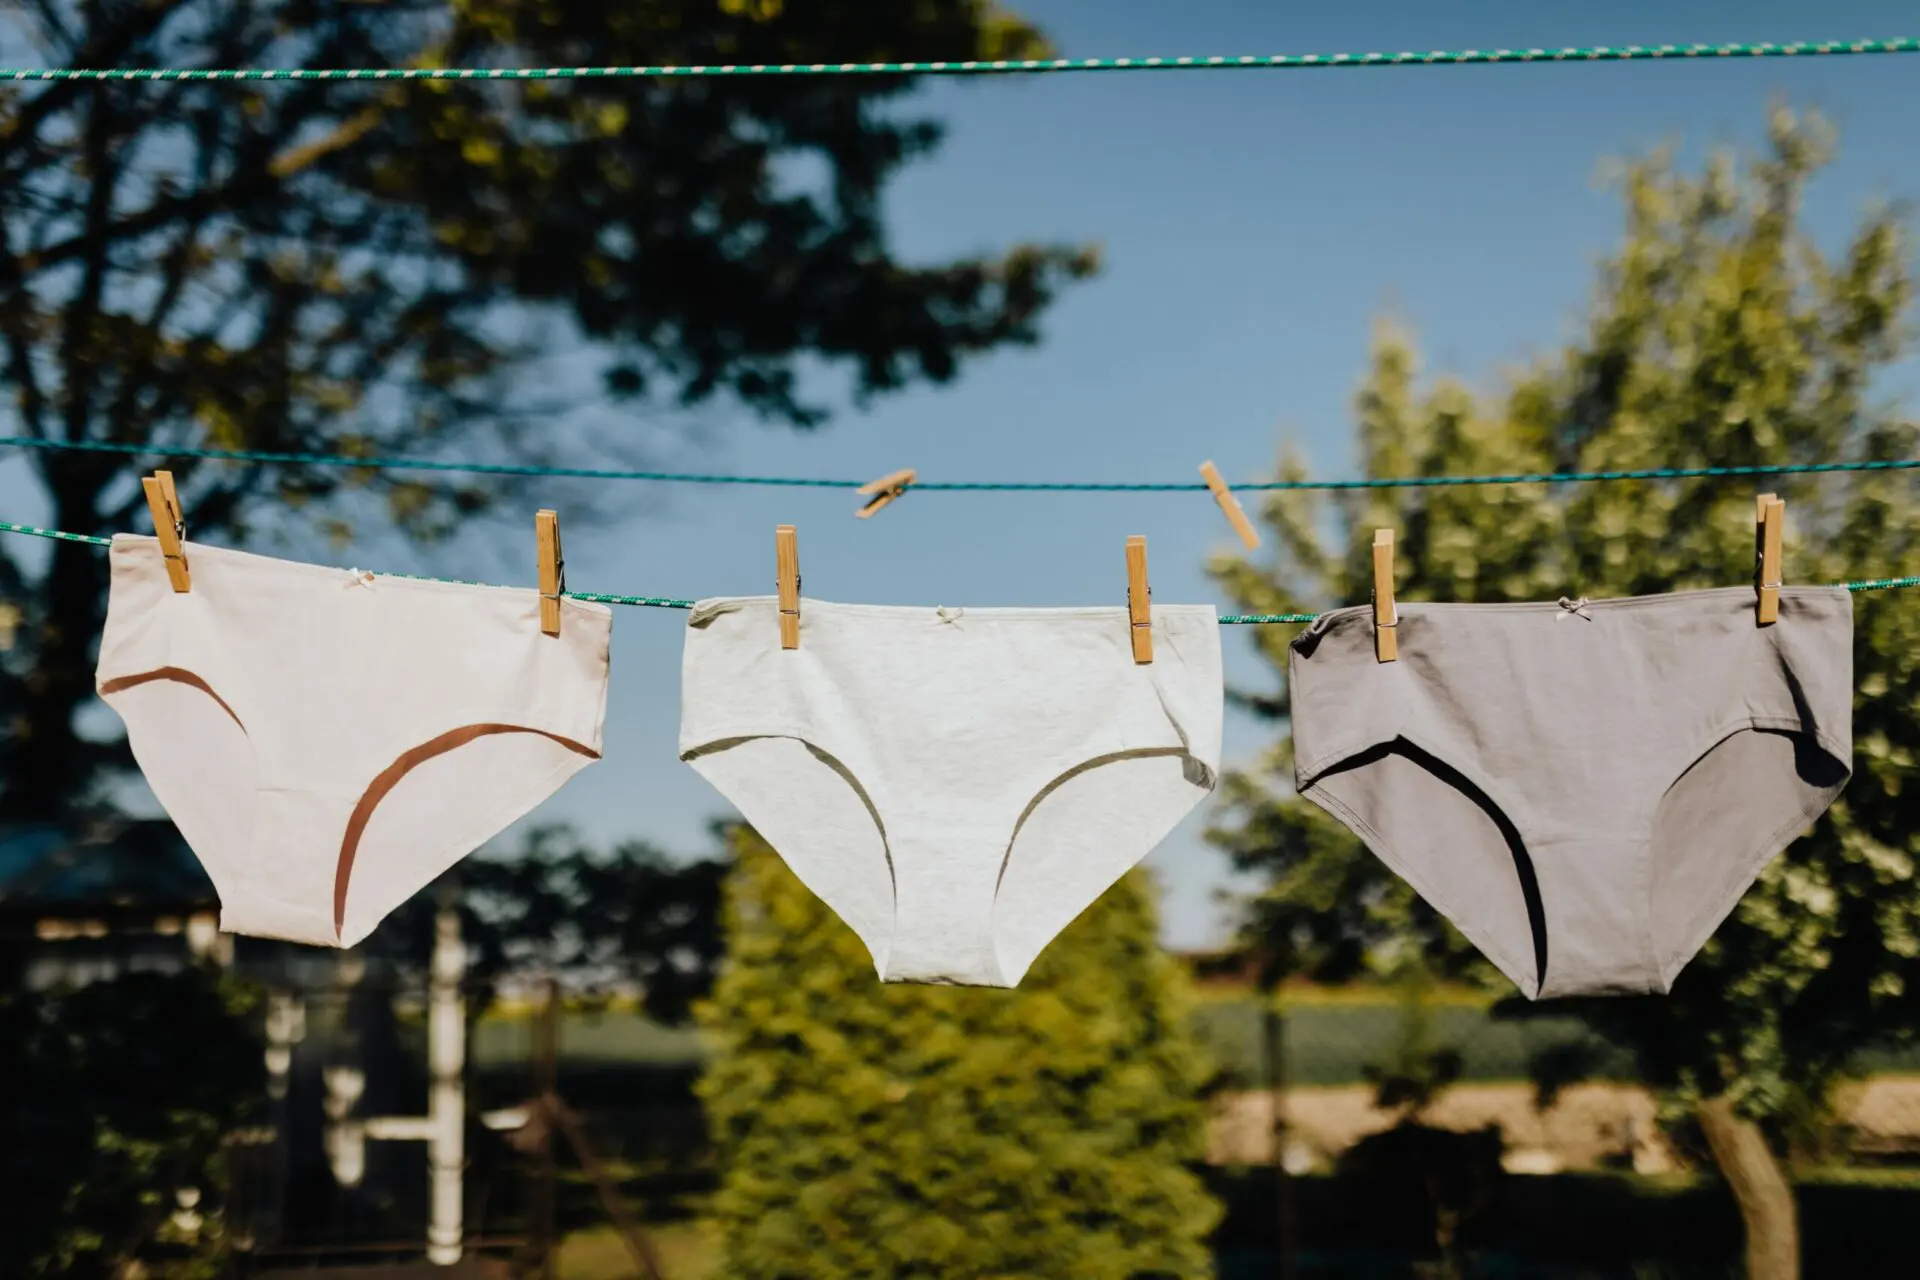 Sustainable Linen Underwear